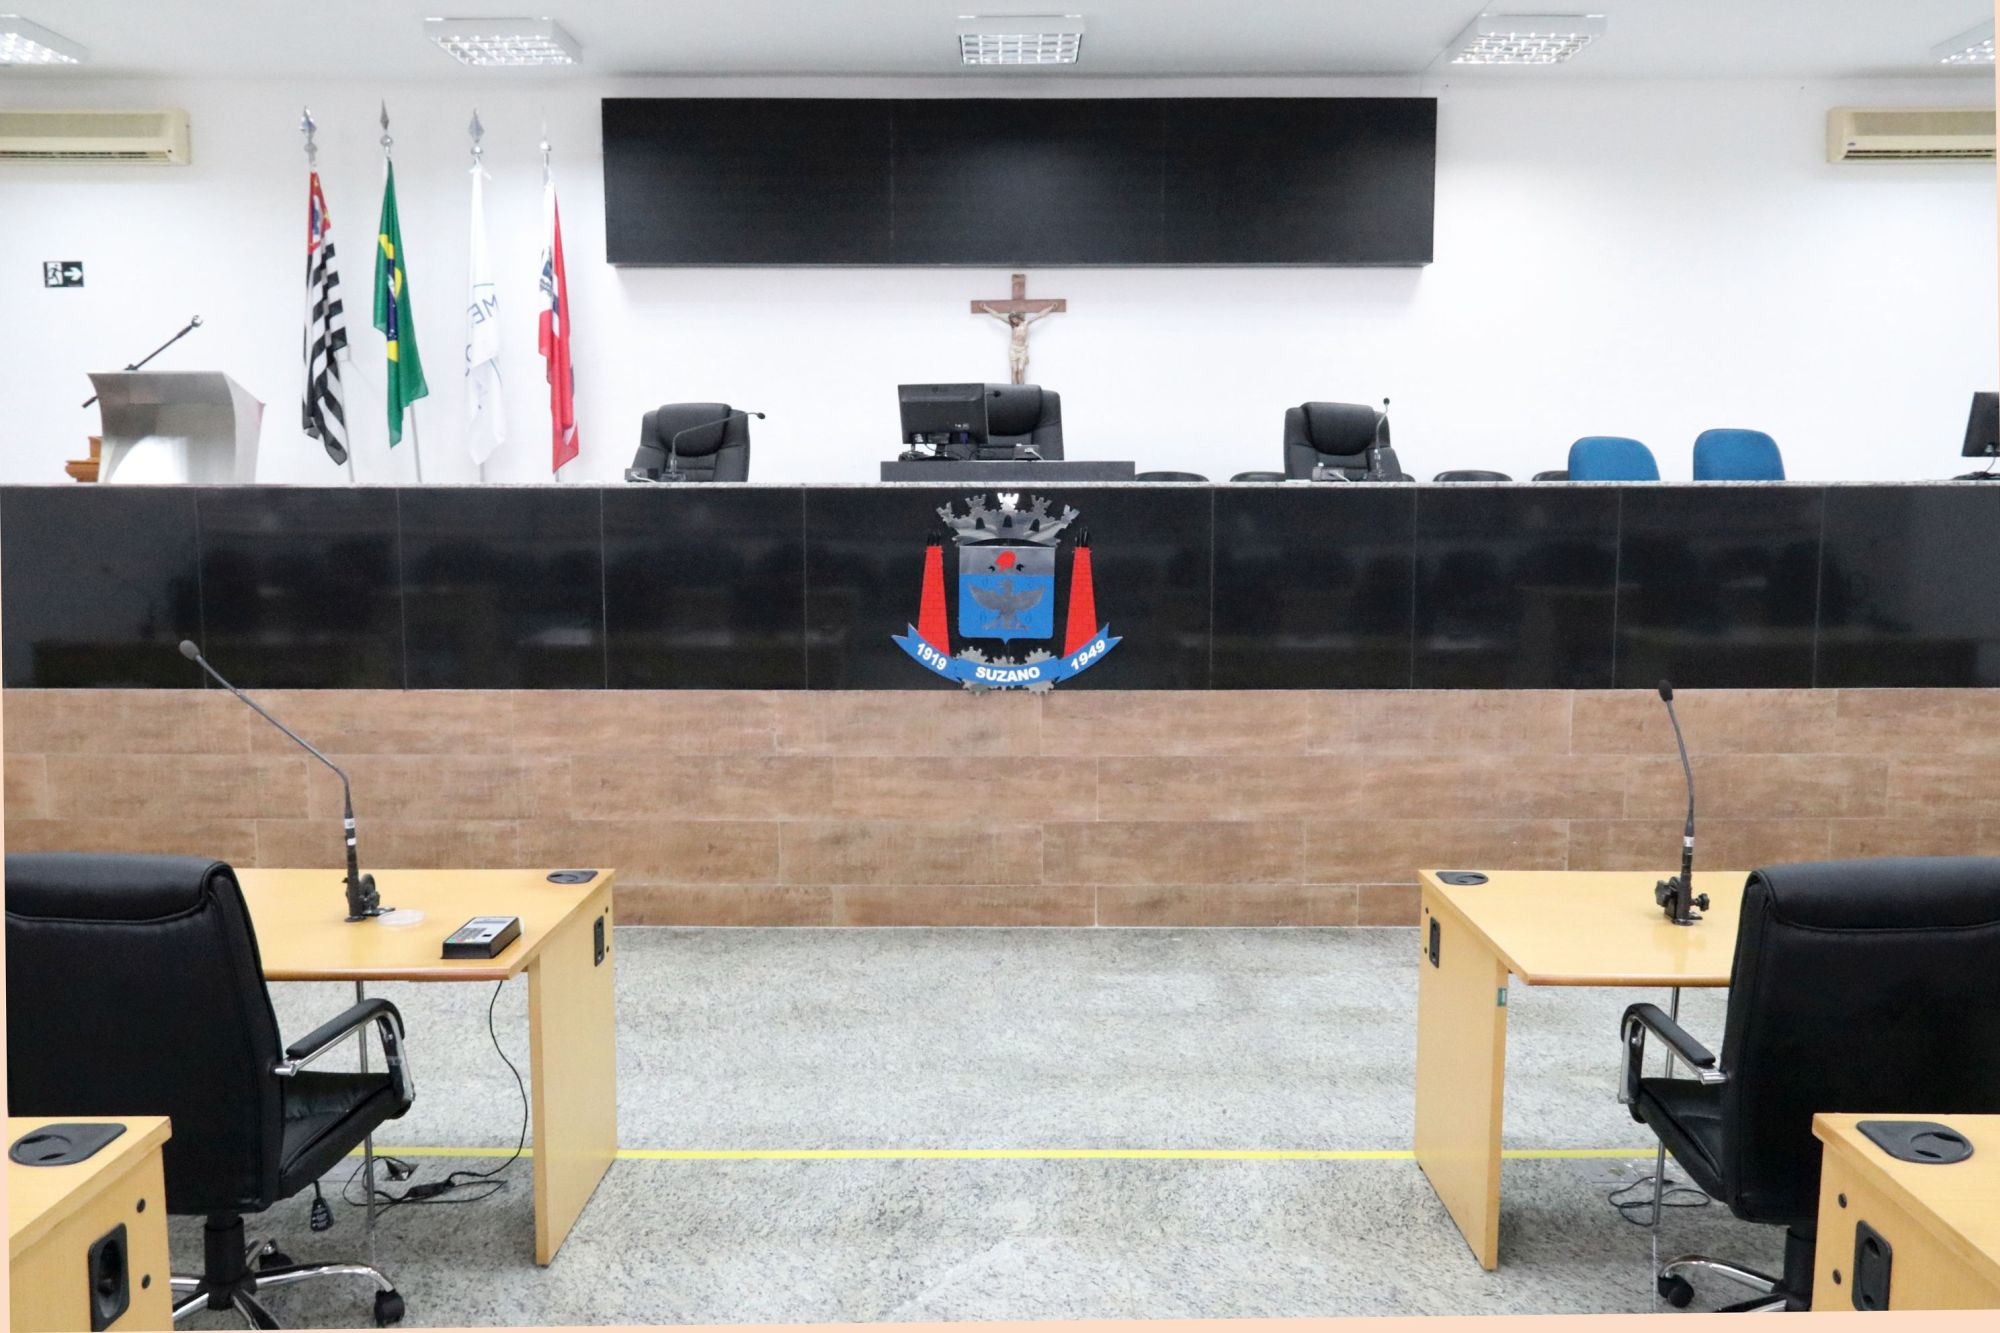 foto da mesa diretiva no Plenário da Câmara de Suzano, ao fundo painel de votação, as bandeiras do Brasil, São Paulo e Suzano, e a tribuna onde são feitos os discursos dos vereadores durantes as sessões